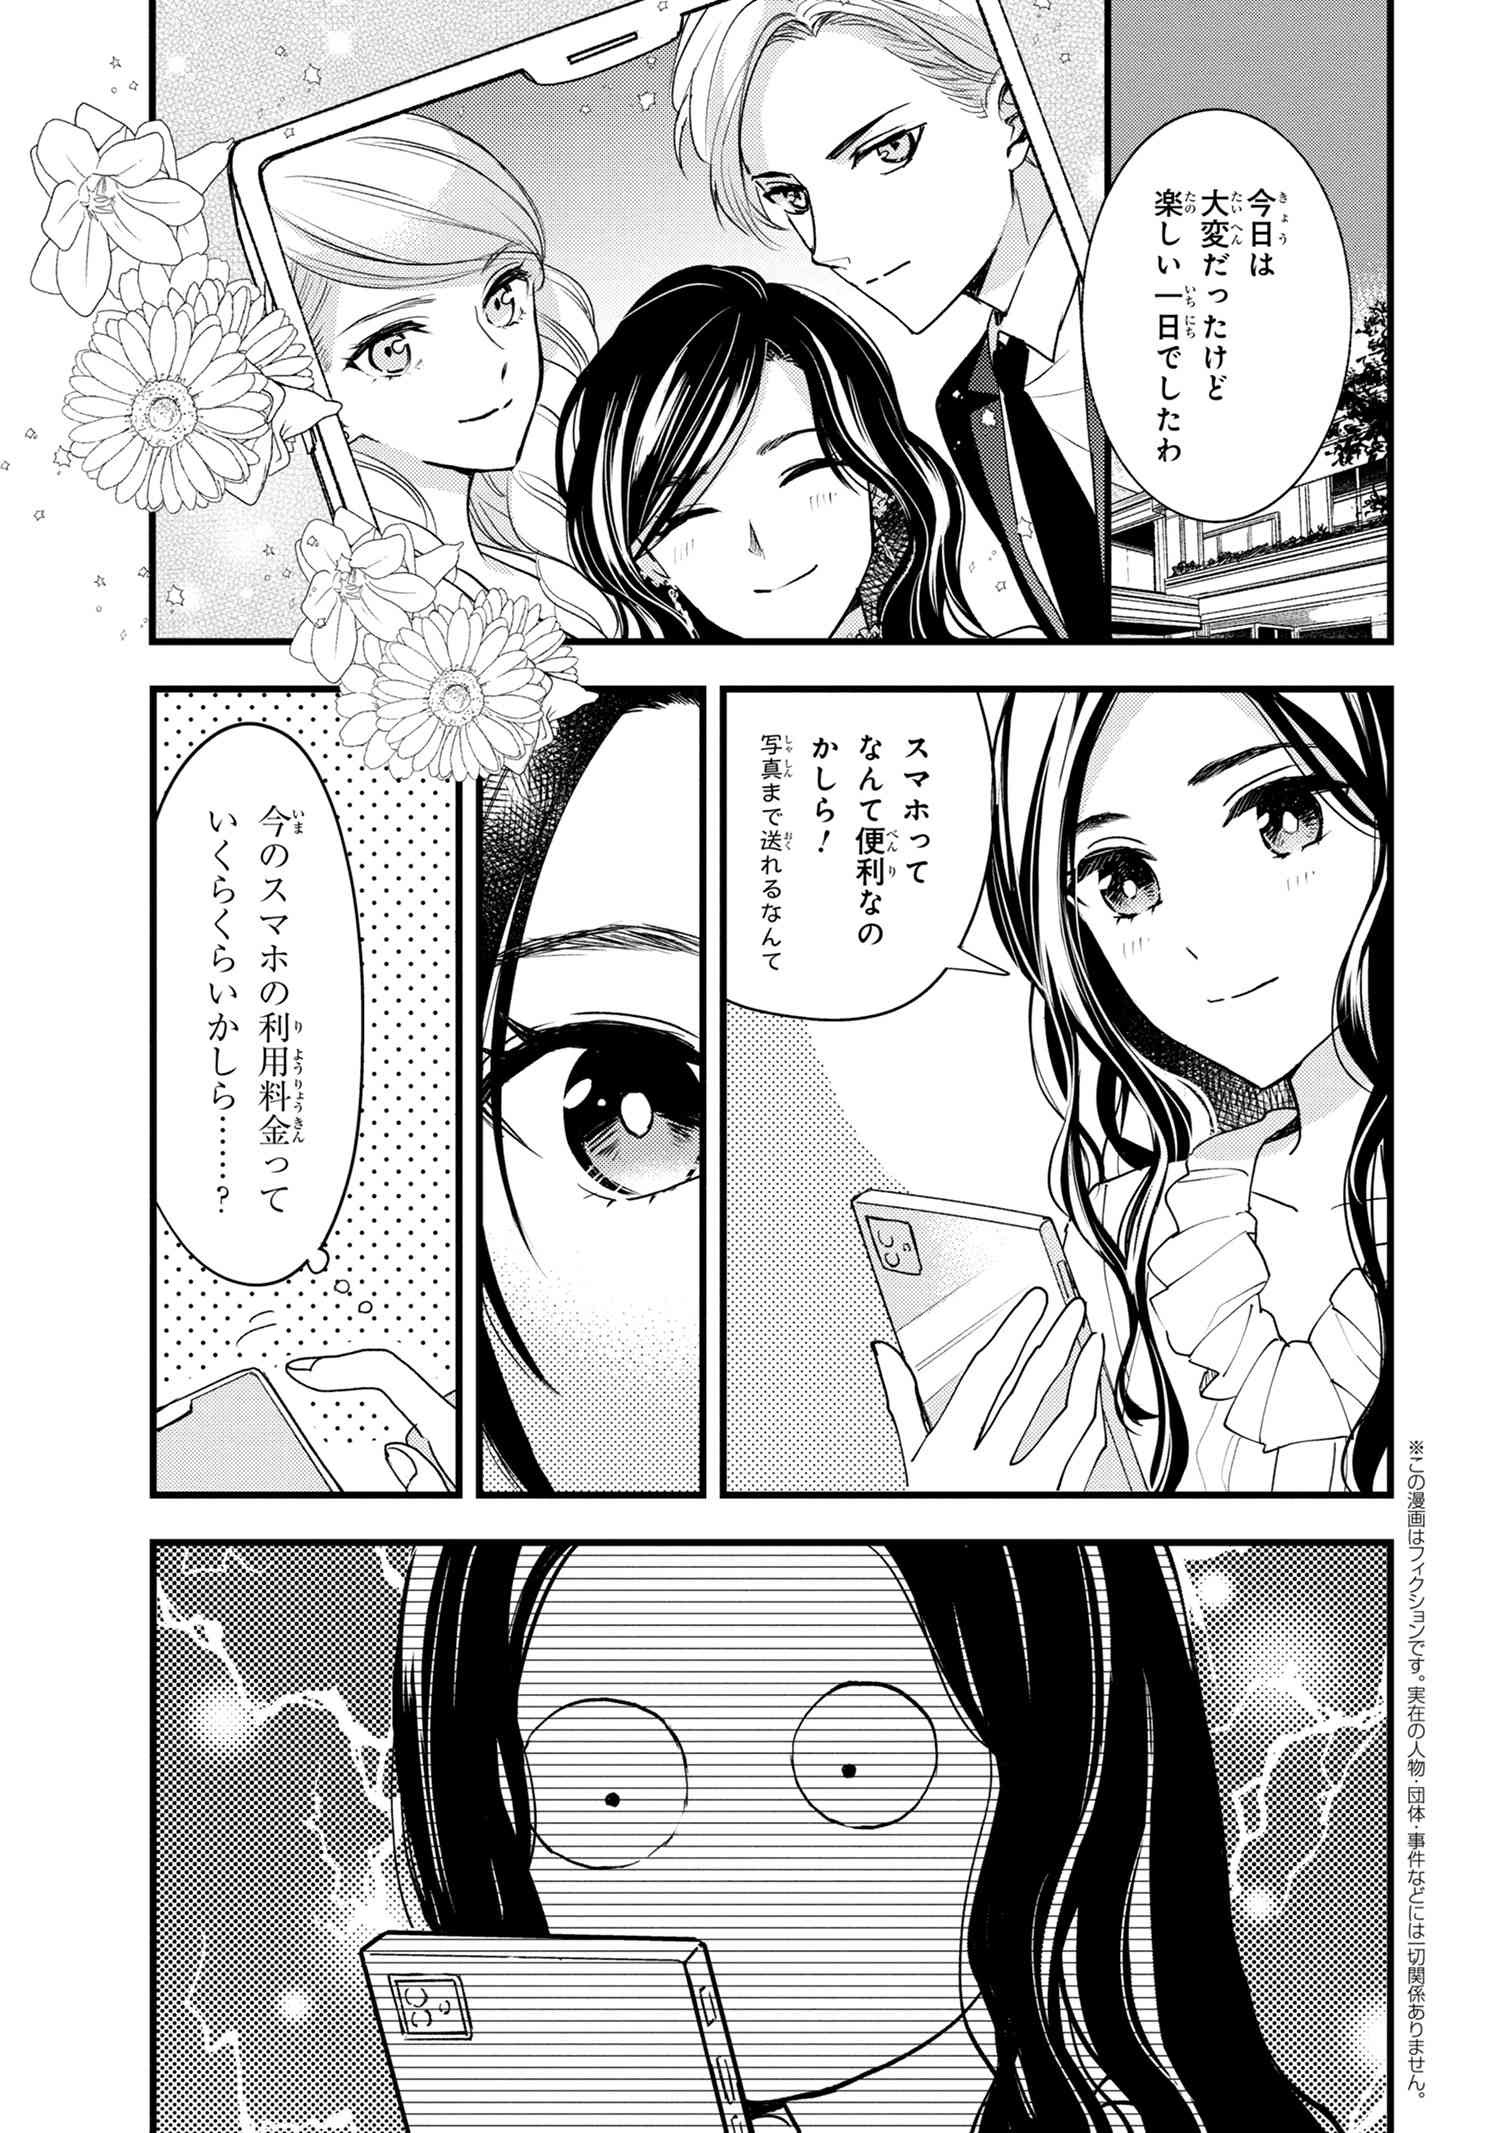 Reiko no Fuugi Akuyaku Reijou to Yobarete imasu ga, tada no Binbou Musume desu - Chapter 15-1 - Page 1